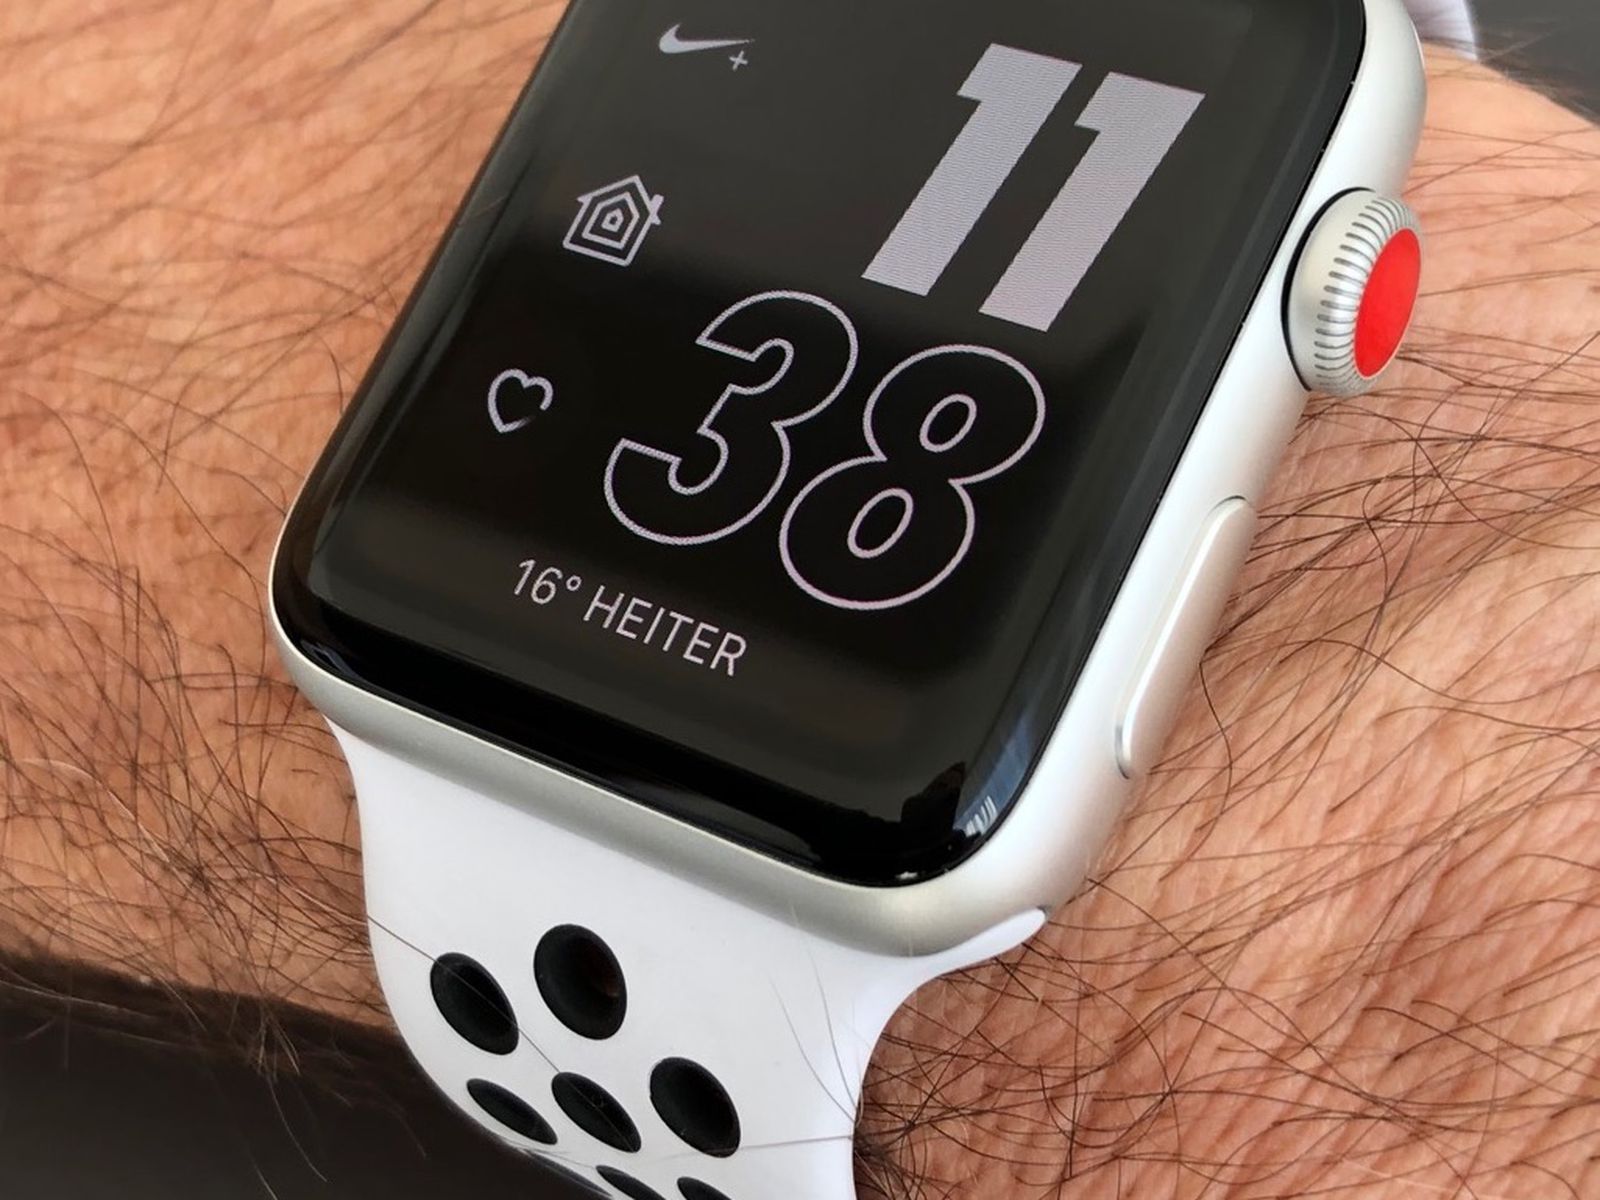 helado Perversión Paleto Apple Watch Nike+ Series 3 GPS and LTE Models Now in Stores - MacRumors